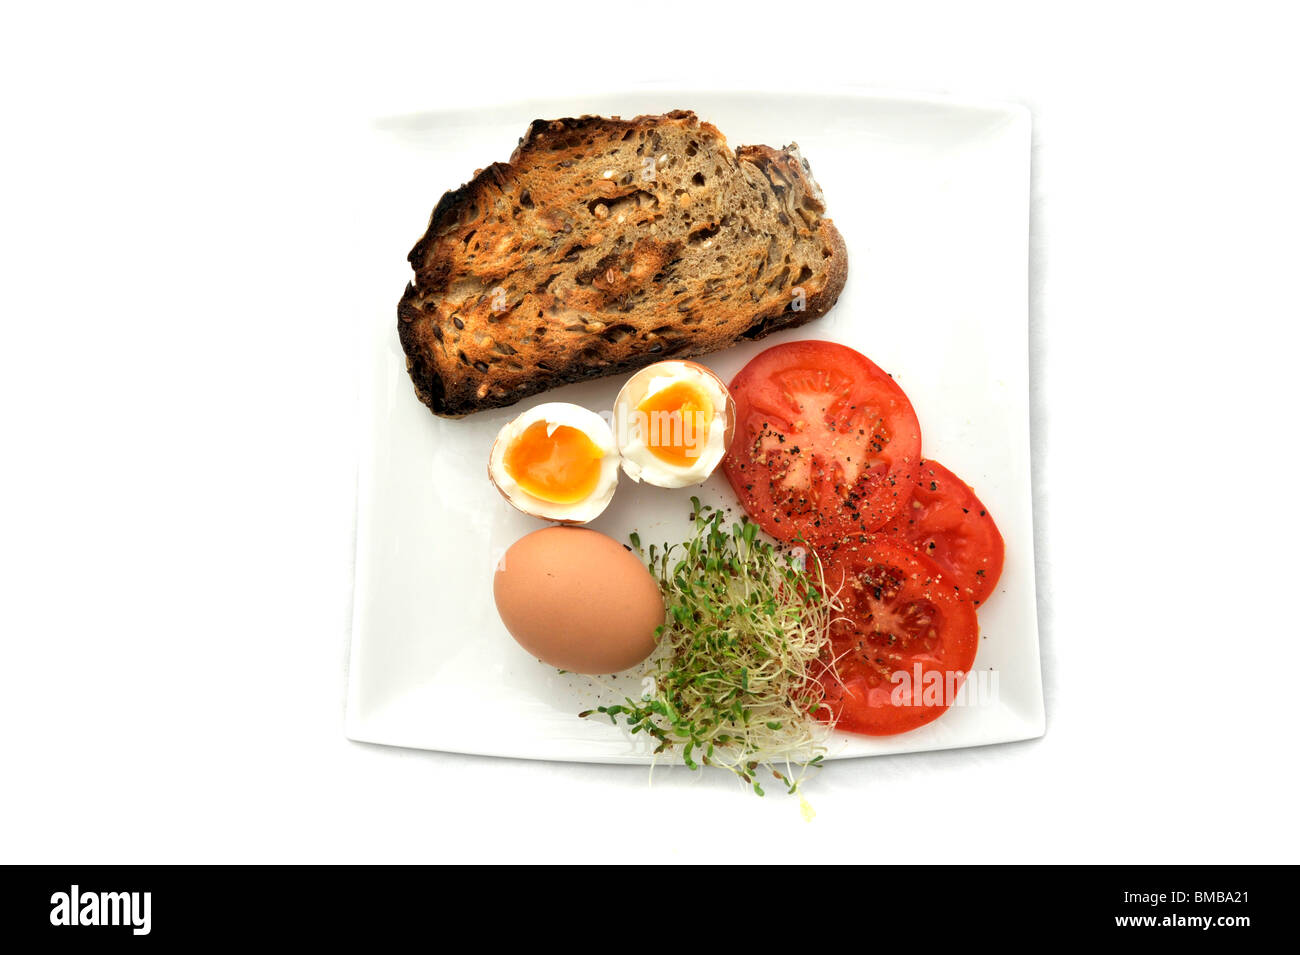 Un sano a basso contenuto di grassi prima colazione composta da uova sode, soughdough integrale pane, alfafa germogli e pomodori Foto Stock